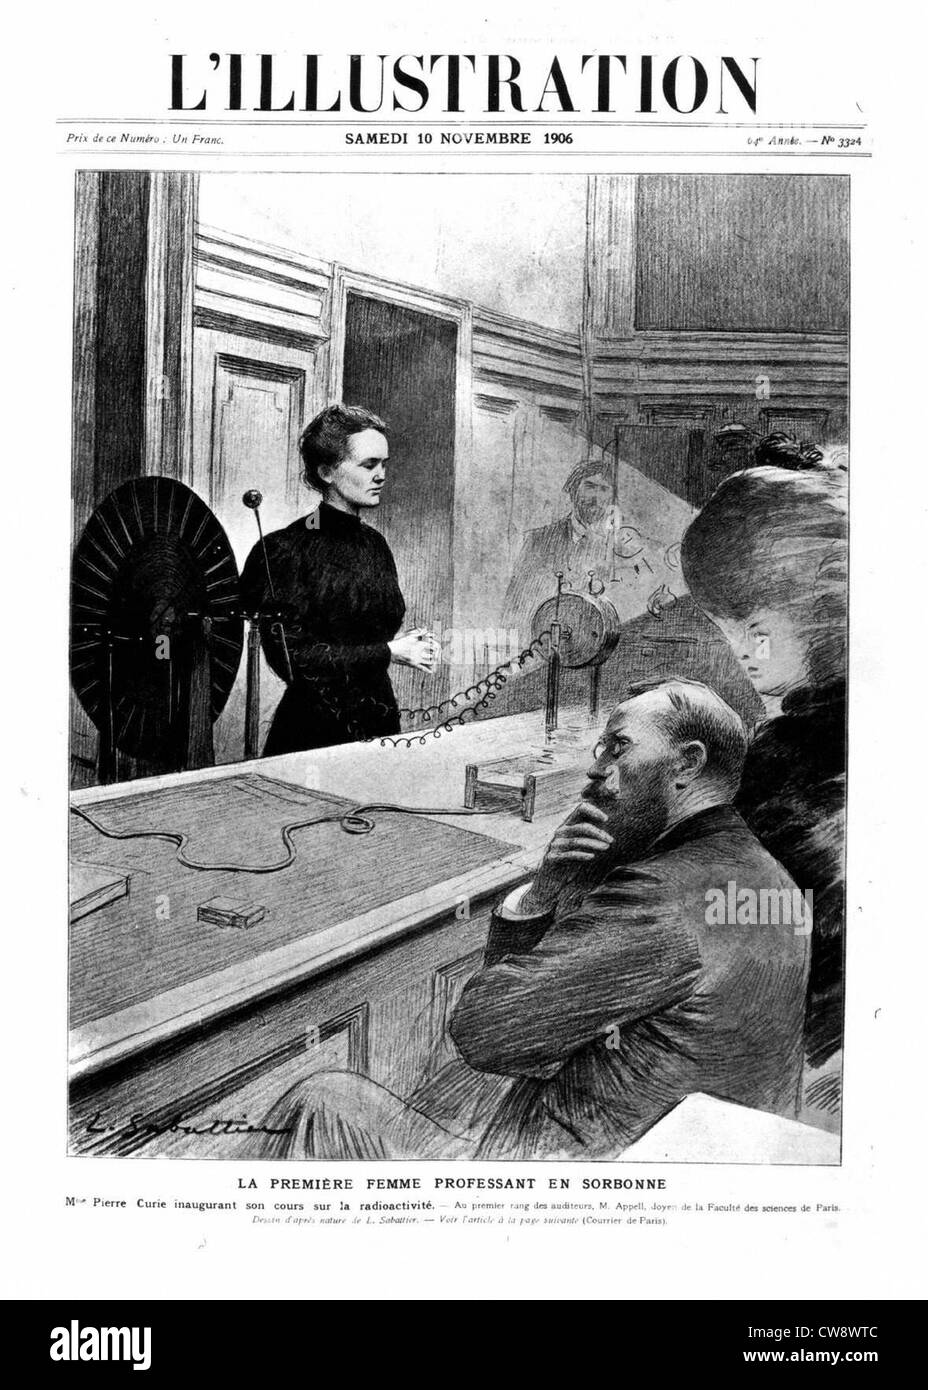 Marie Curie weiht ihre Klasse auf Radioaktivität an Sorbonne Stockfoto